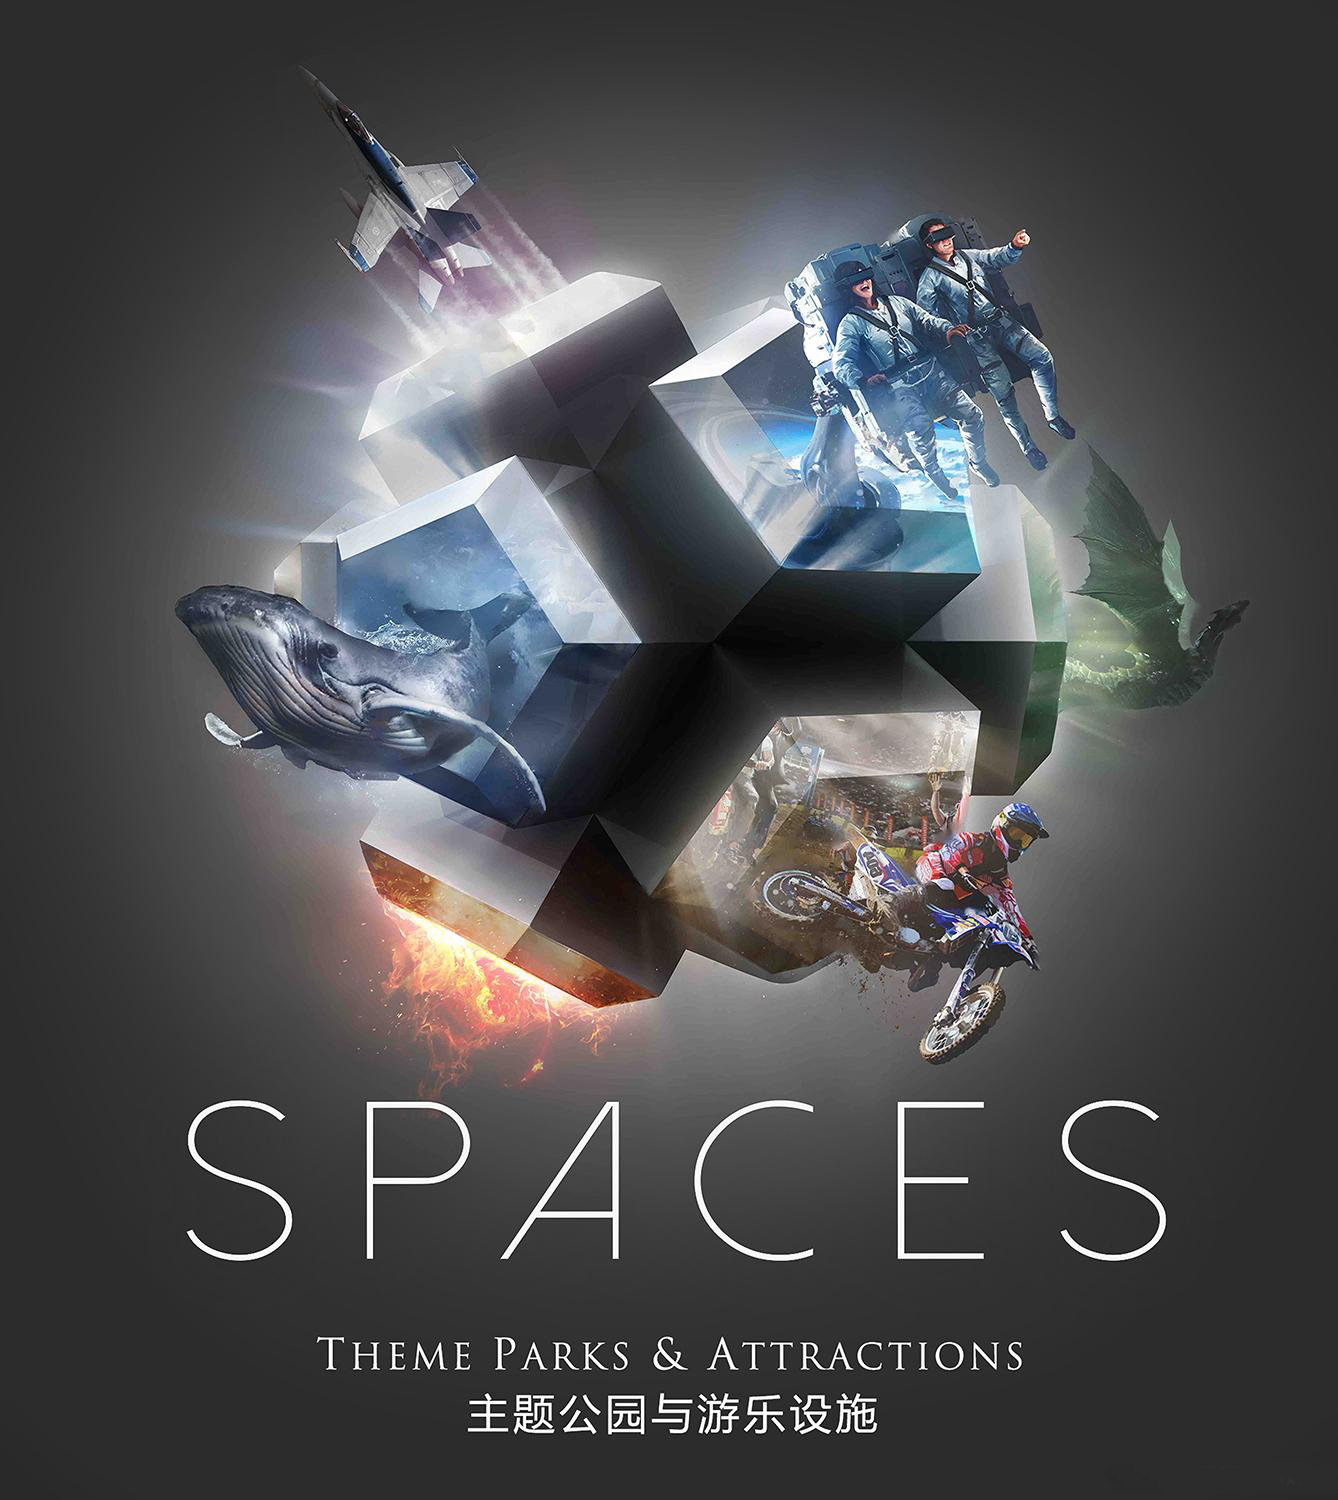 VR主题公园SPACES获得宋城演艺领投的650万美元融资